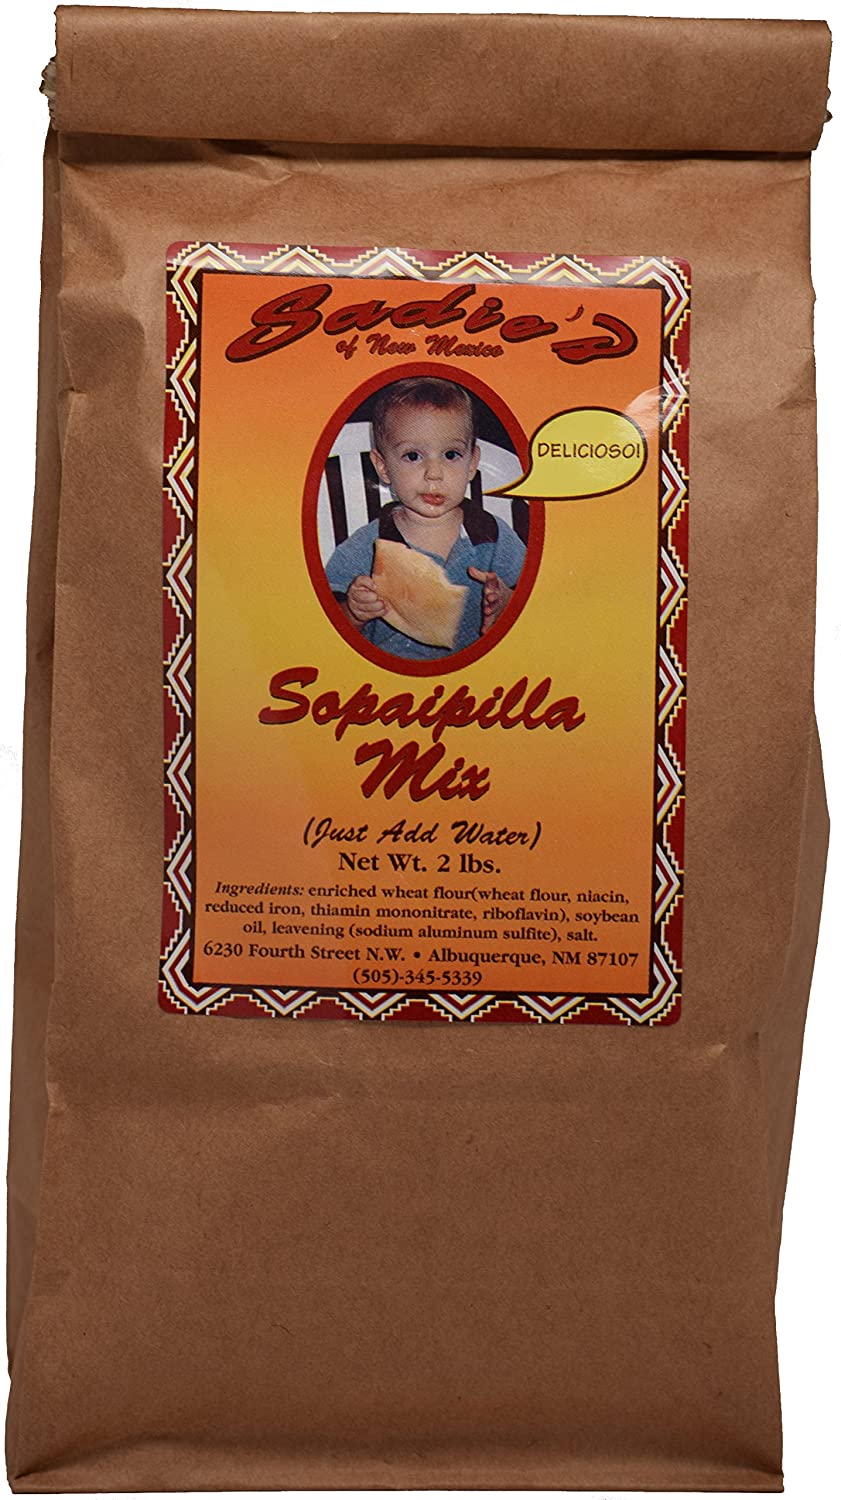 Sadie's Sopaipilla Mix